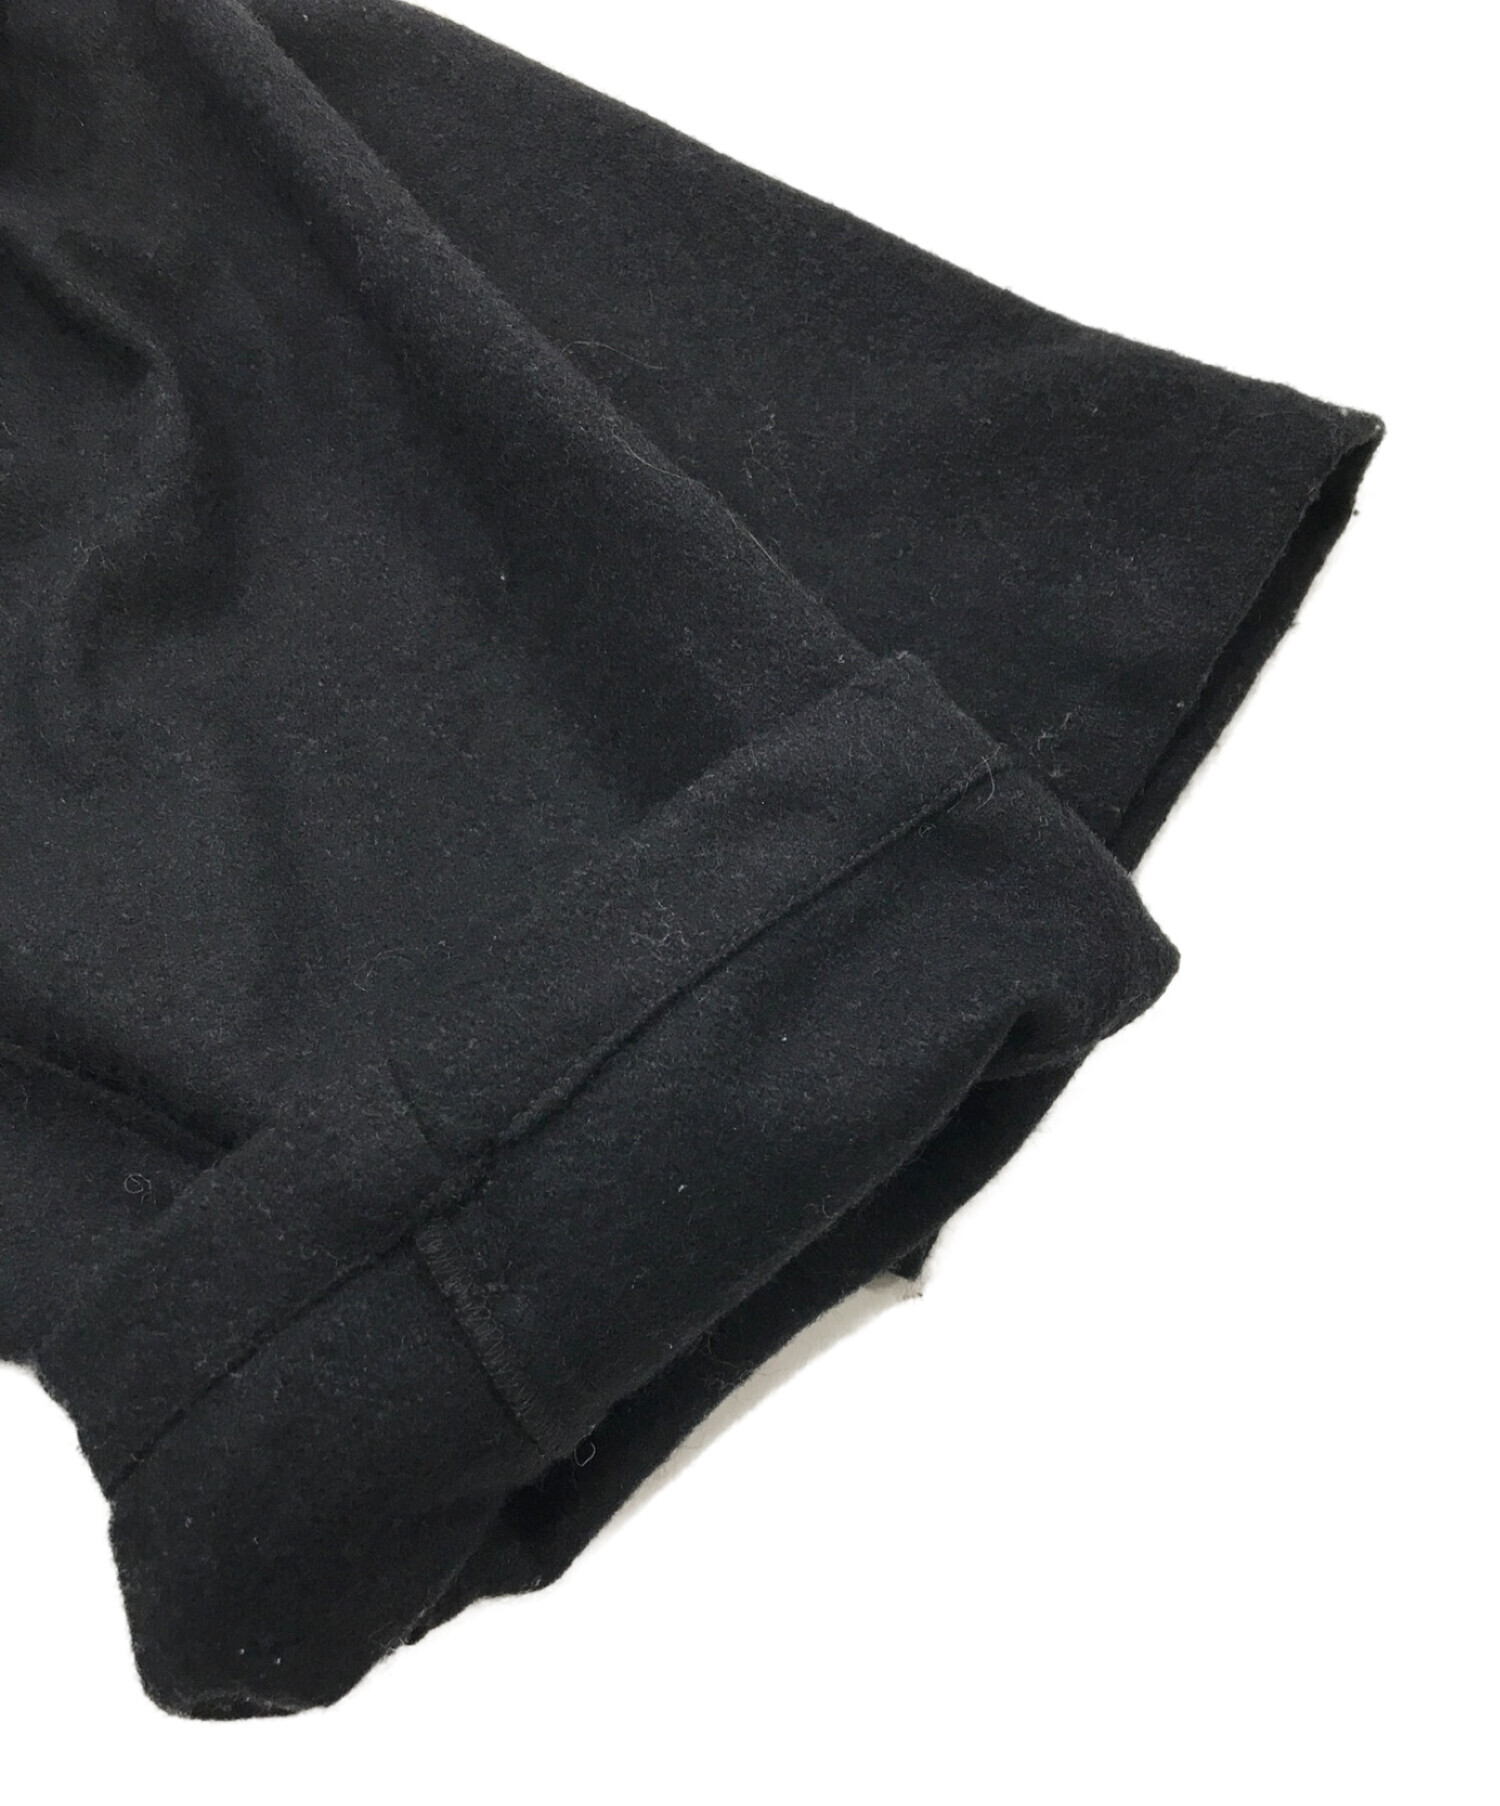 Badhiya (バディーヤ) ワイドウールジャケット ブラック サイズ:表記なし